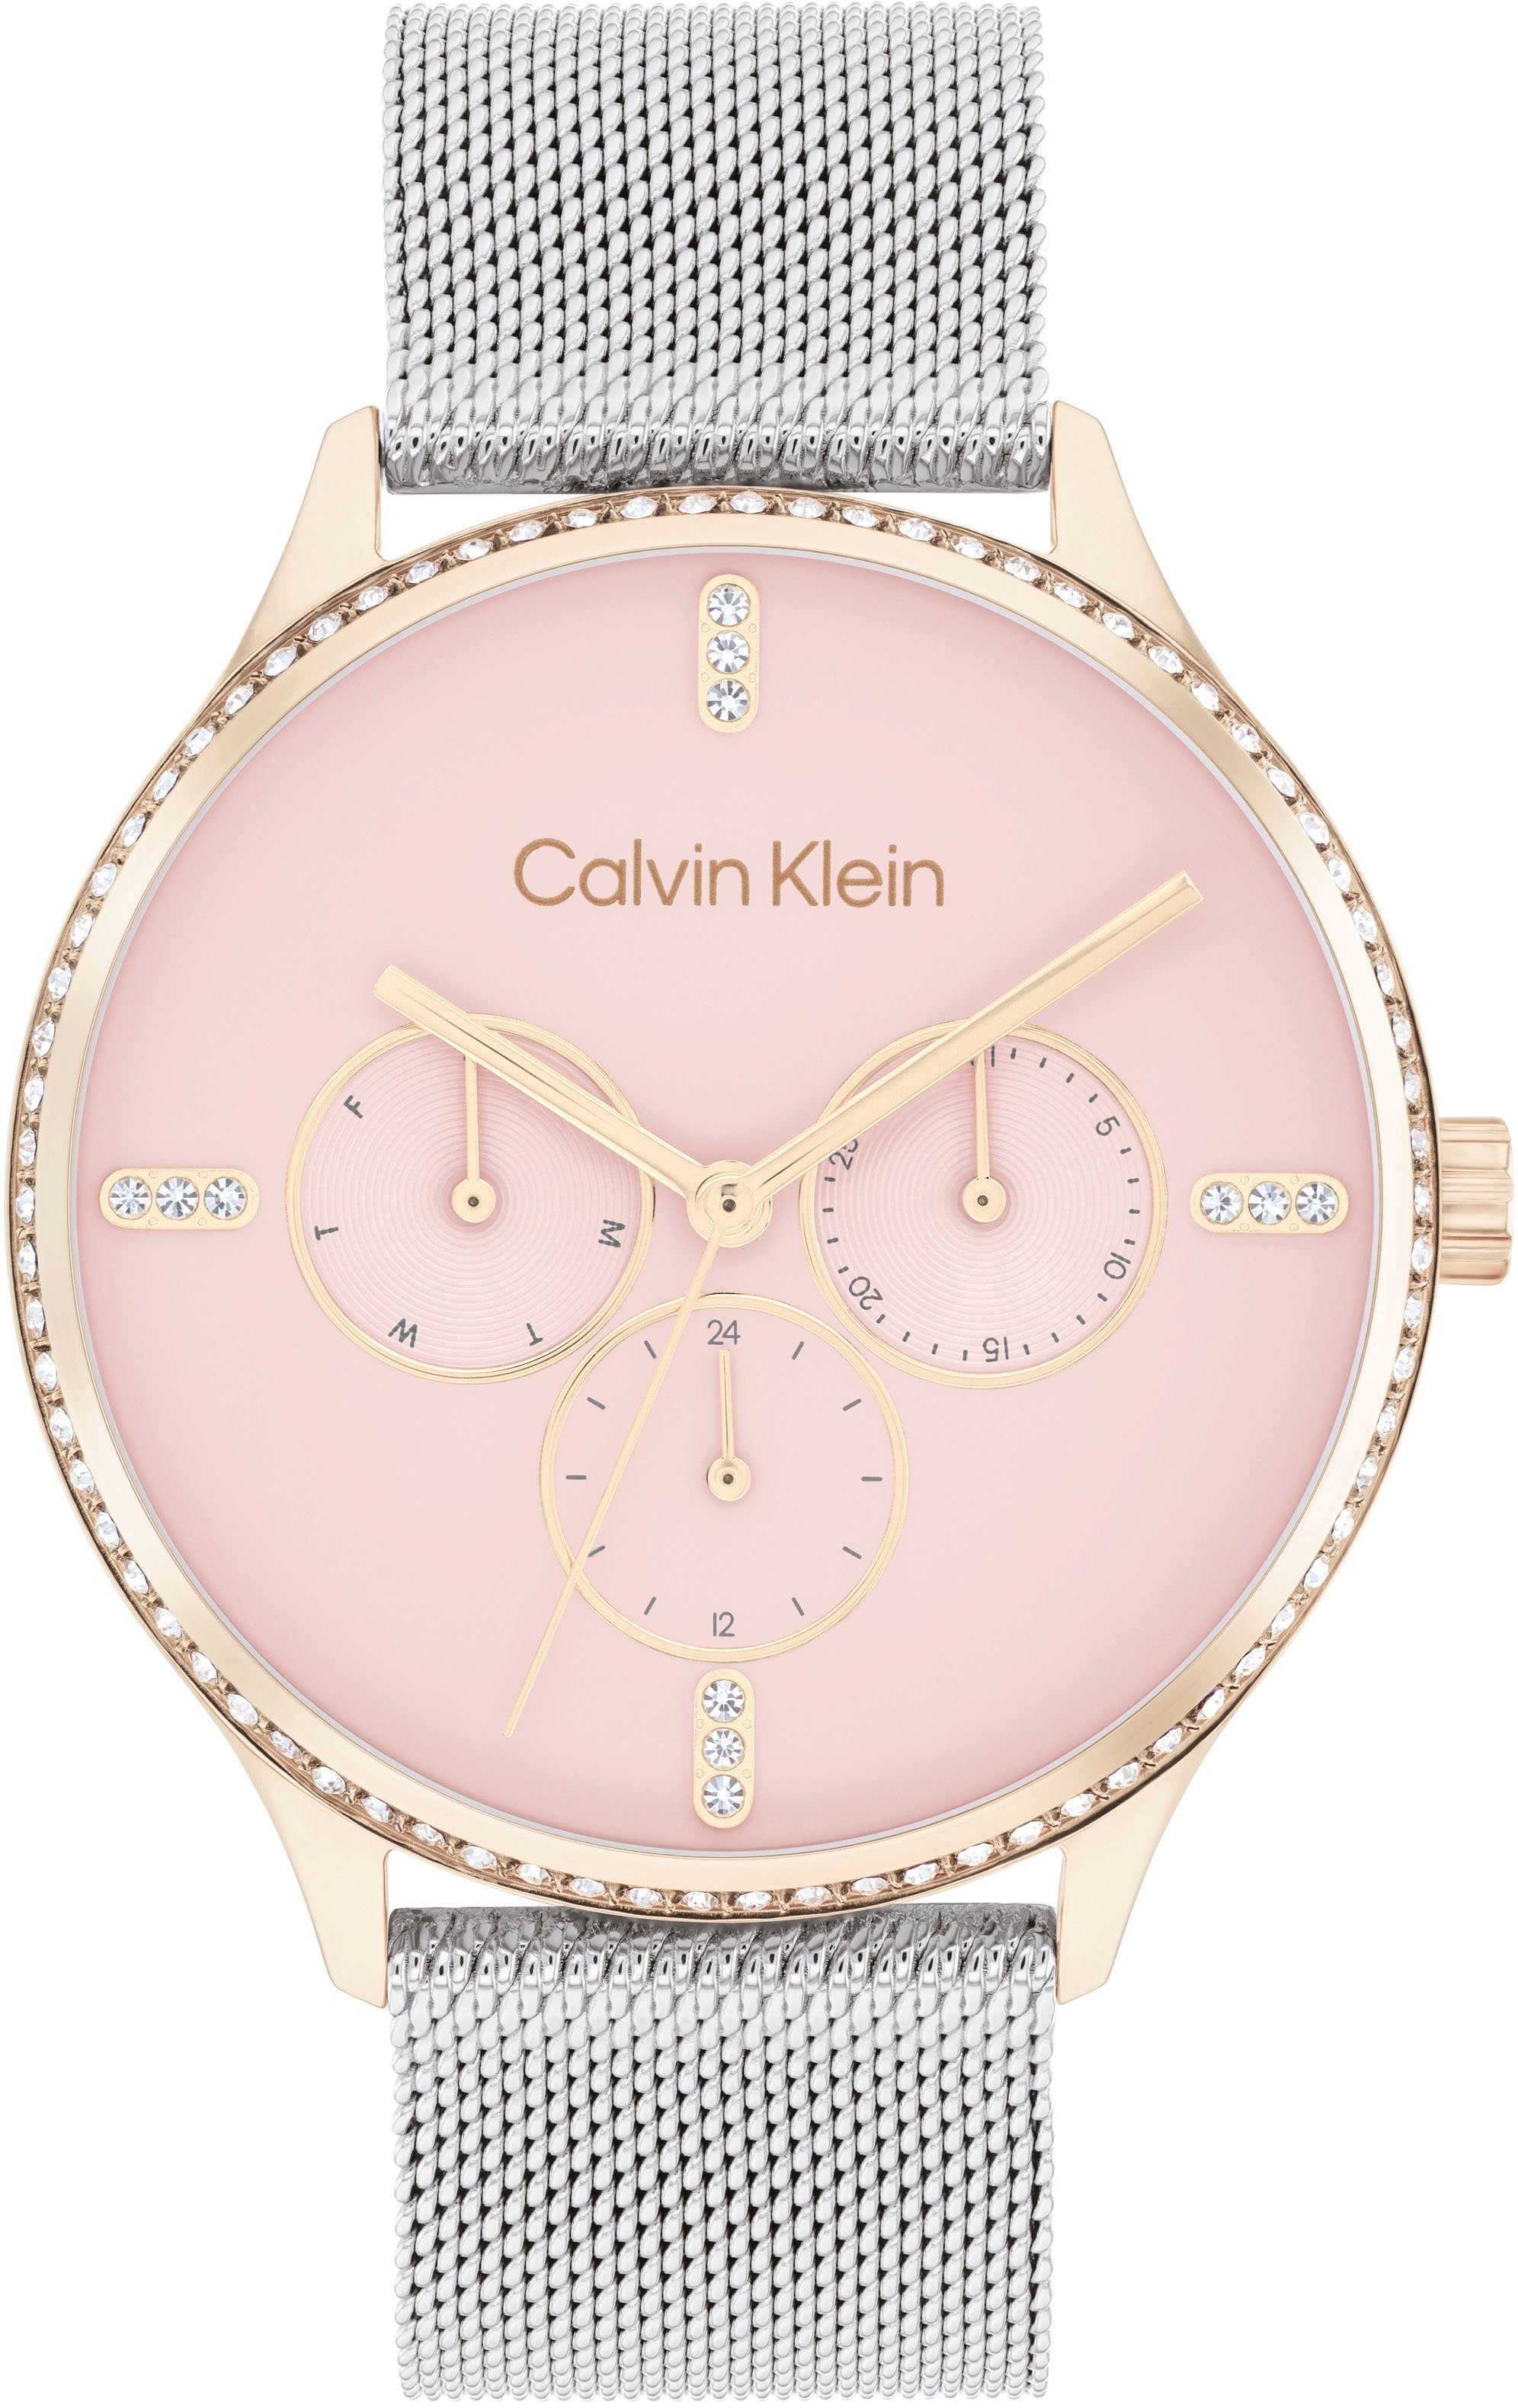 Calvin Klein Multifunktionsuhr 25200374, Quarzuhr, Armbanduhr, Damen, Datum, Glaskristalle, 12/24-Std.-Anzeige